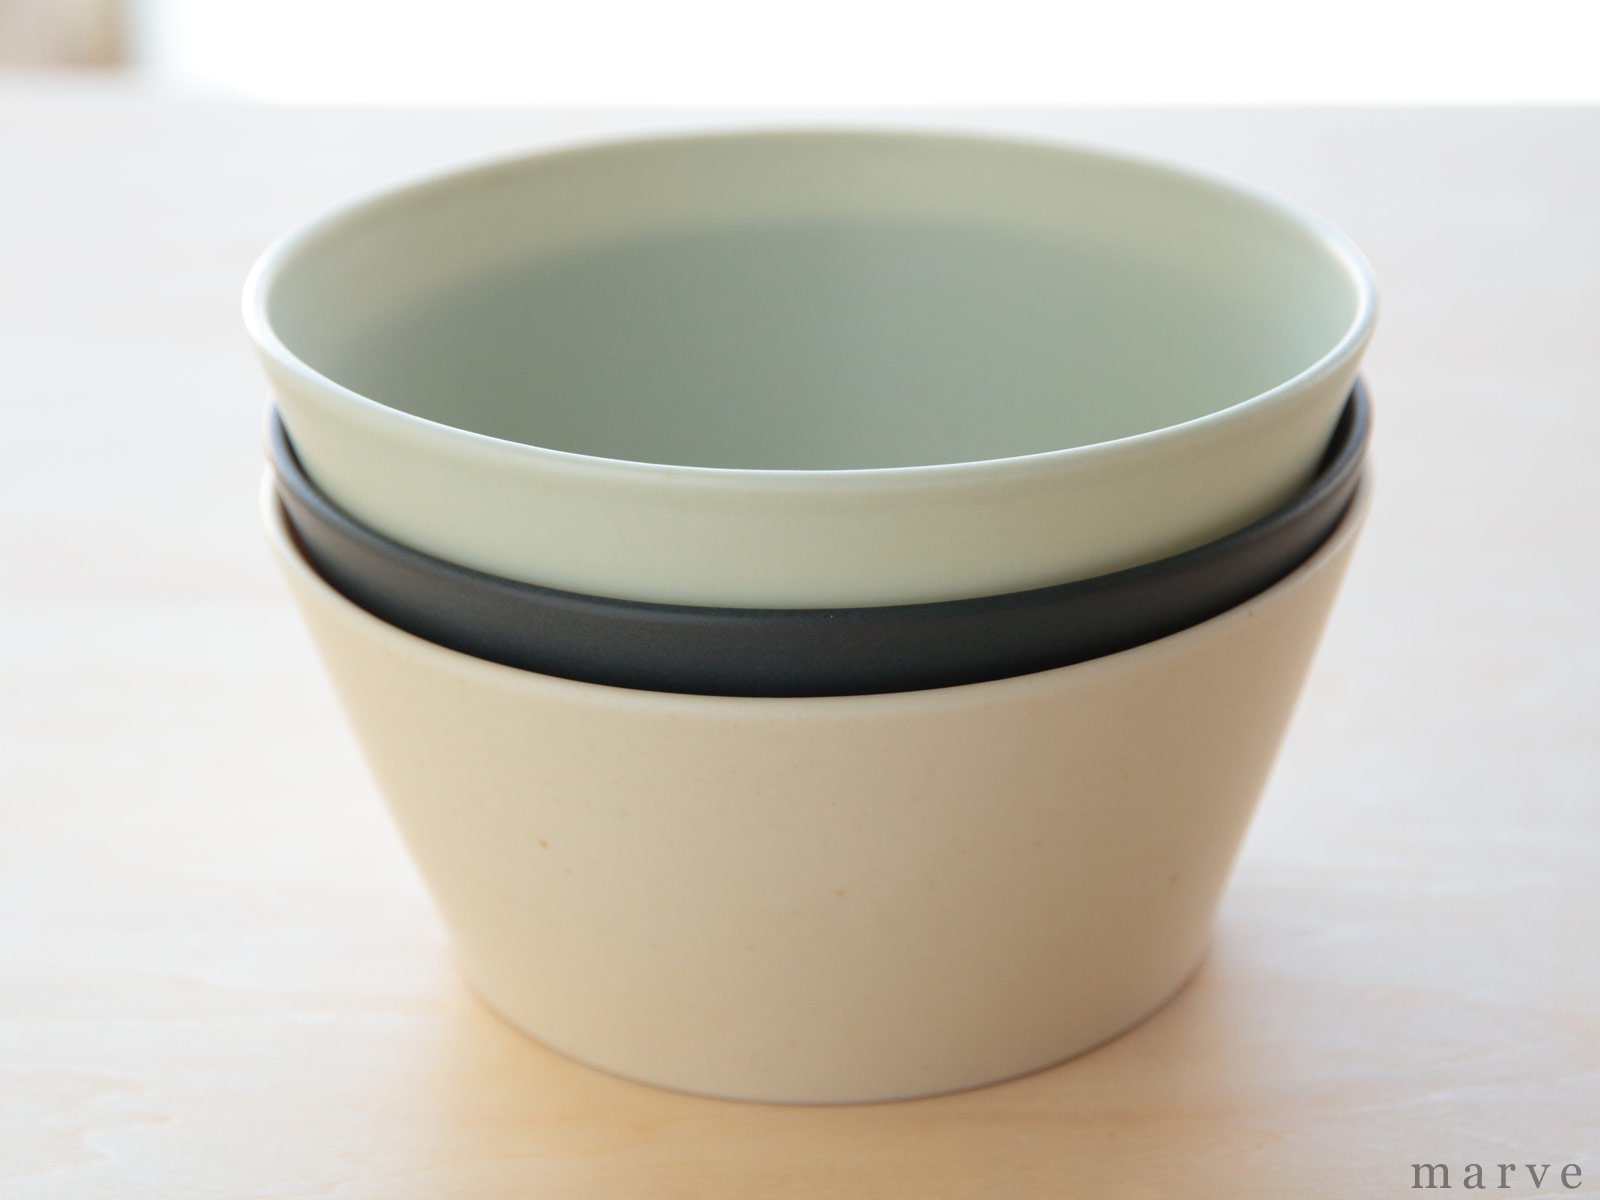 KANEAKI SAKAI POTTERY flat bowl　コバルト